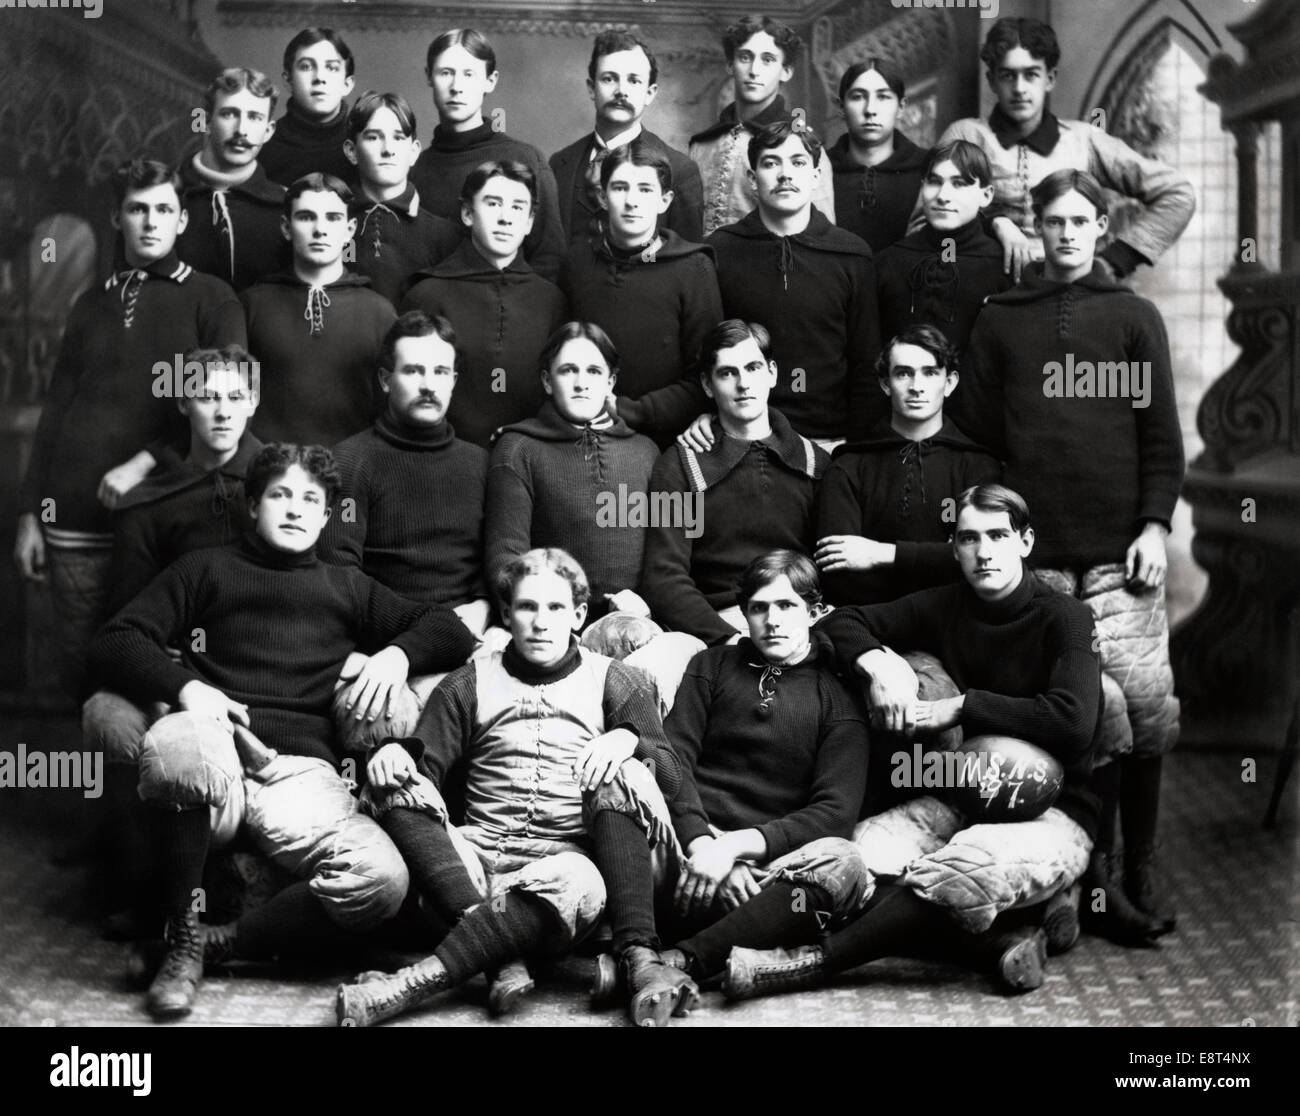 Années 1890, l'ÉQUIPE DE FOOTBALL MEMBRES PORTRAIT LOOKING AT CAMERA Banque D'Images